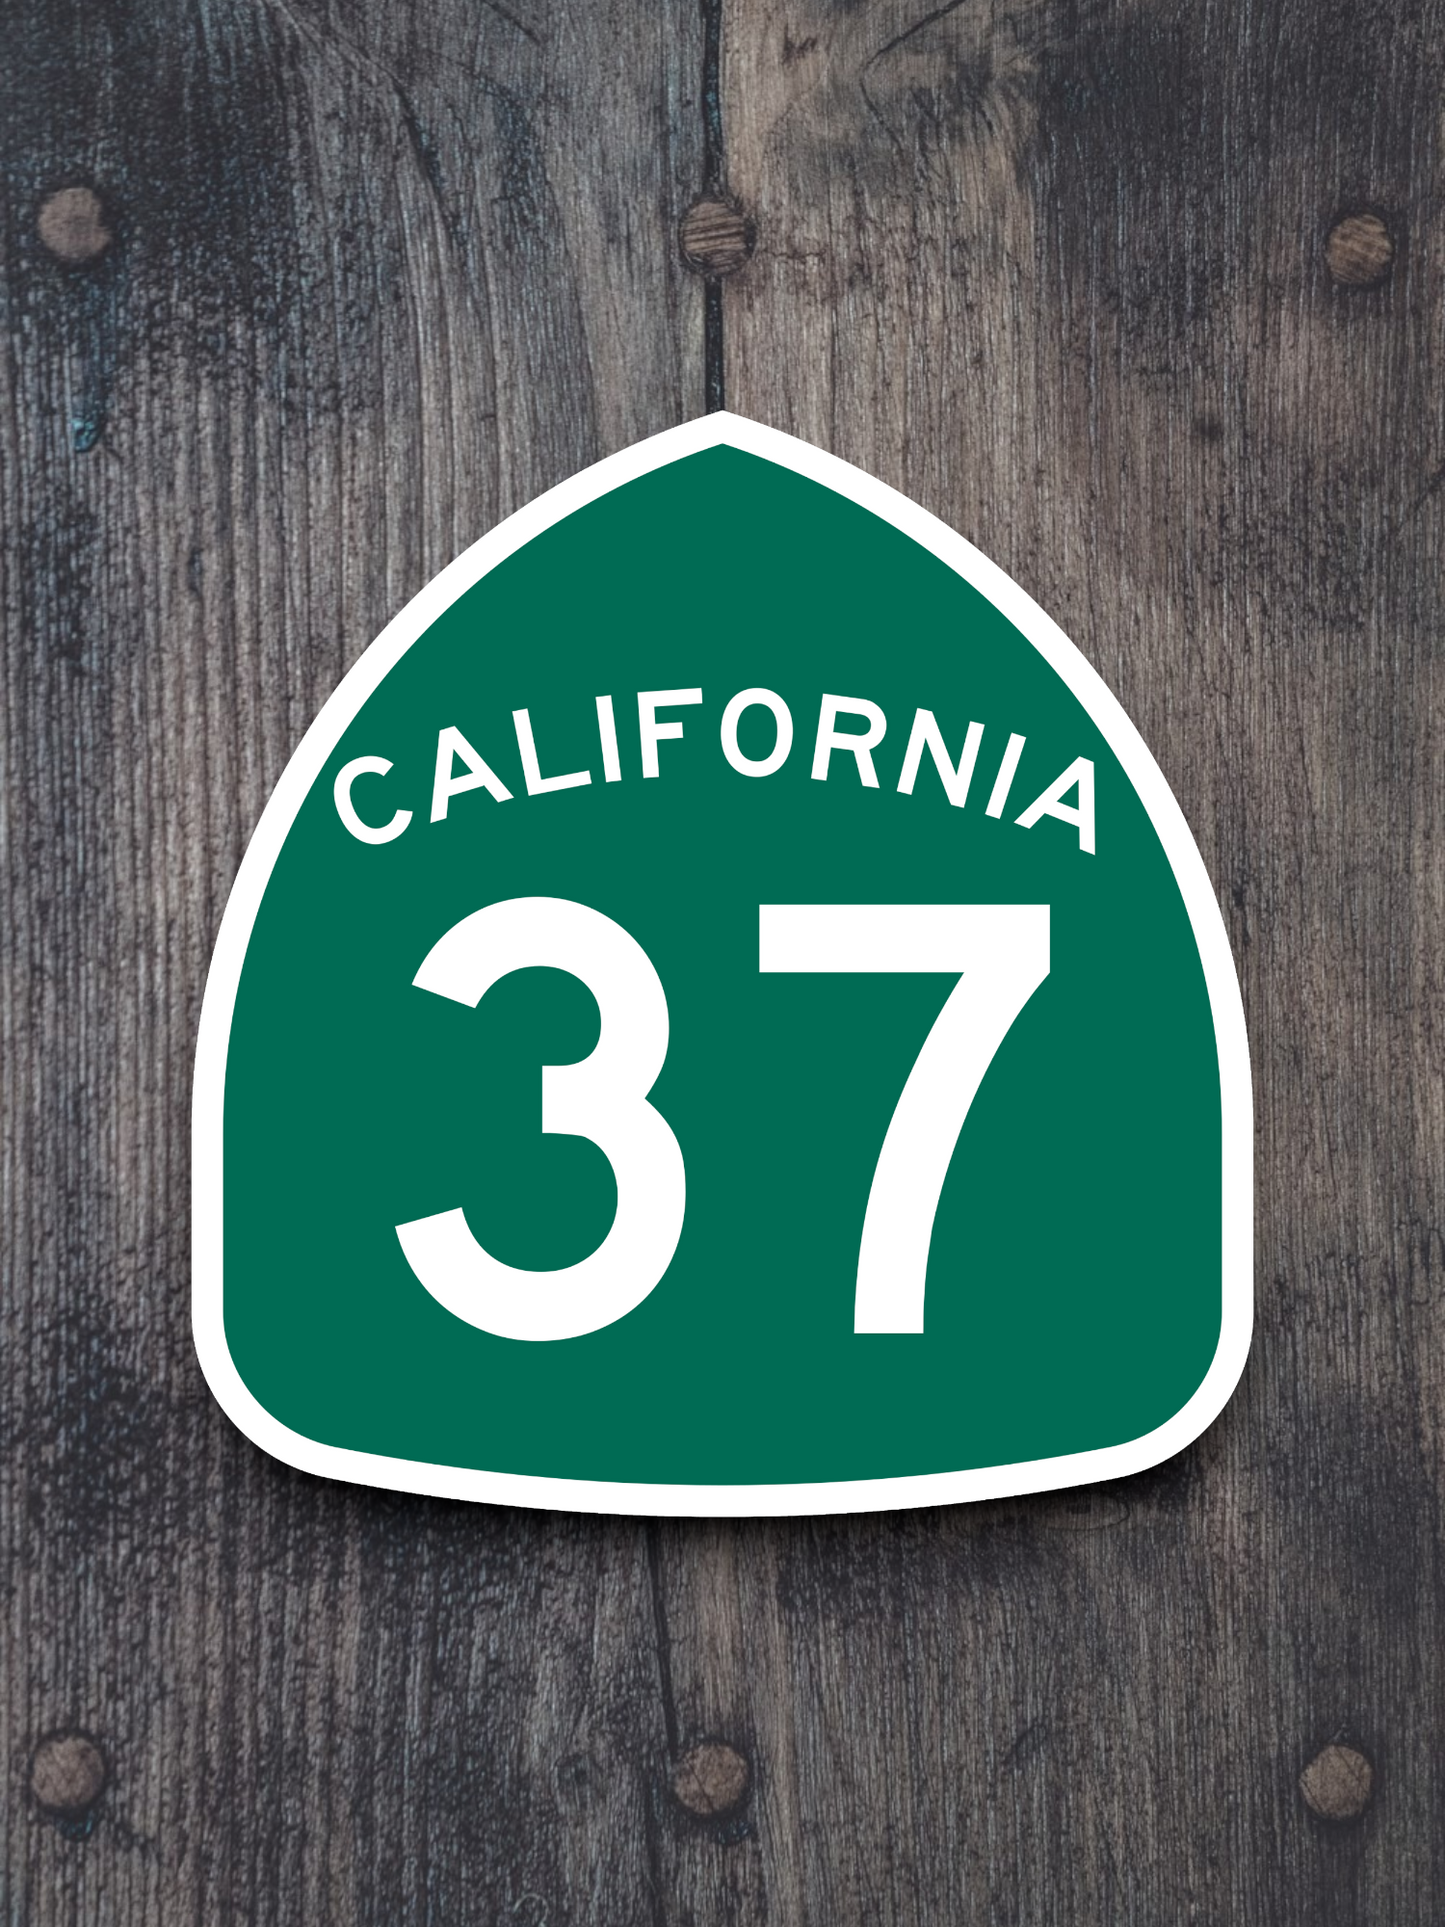 California State Route 37 Sticker